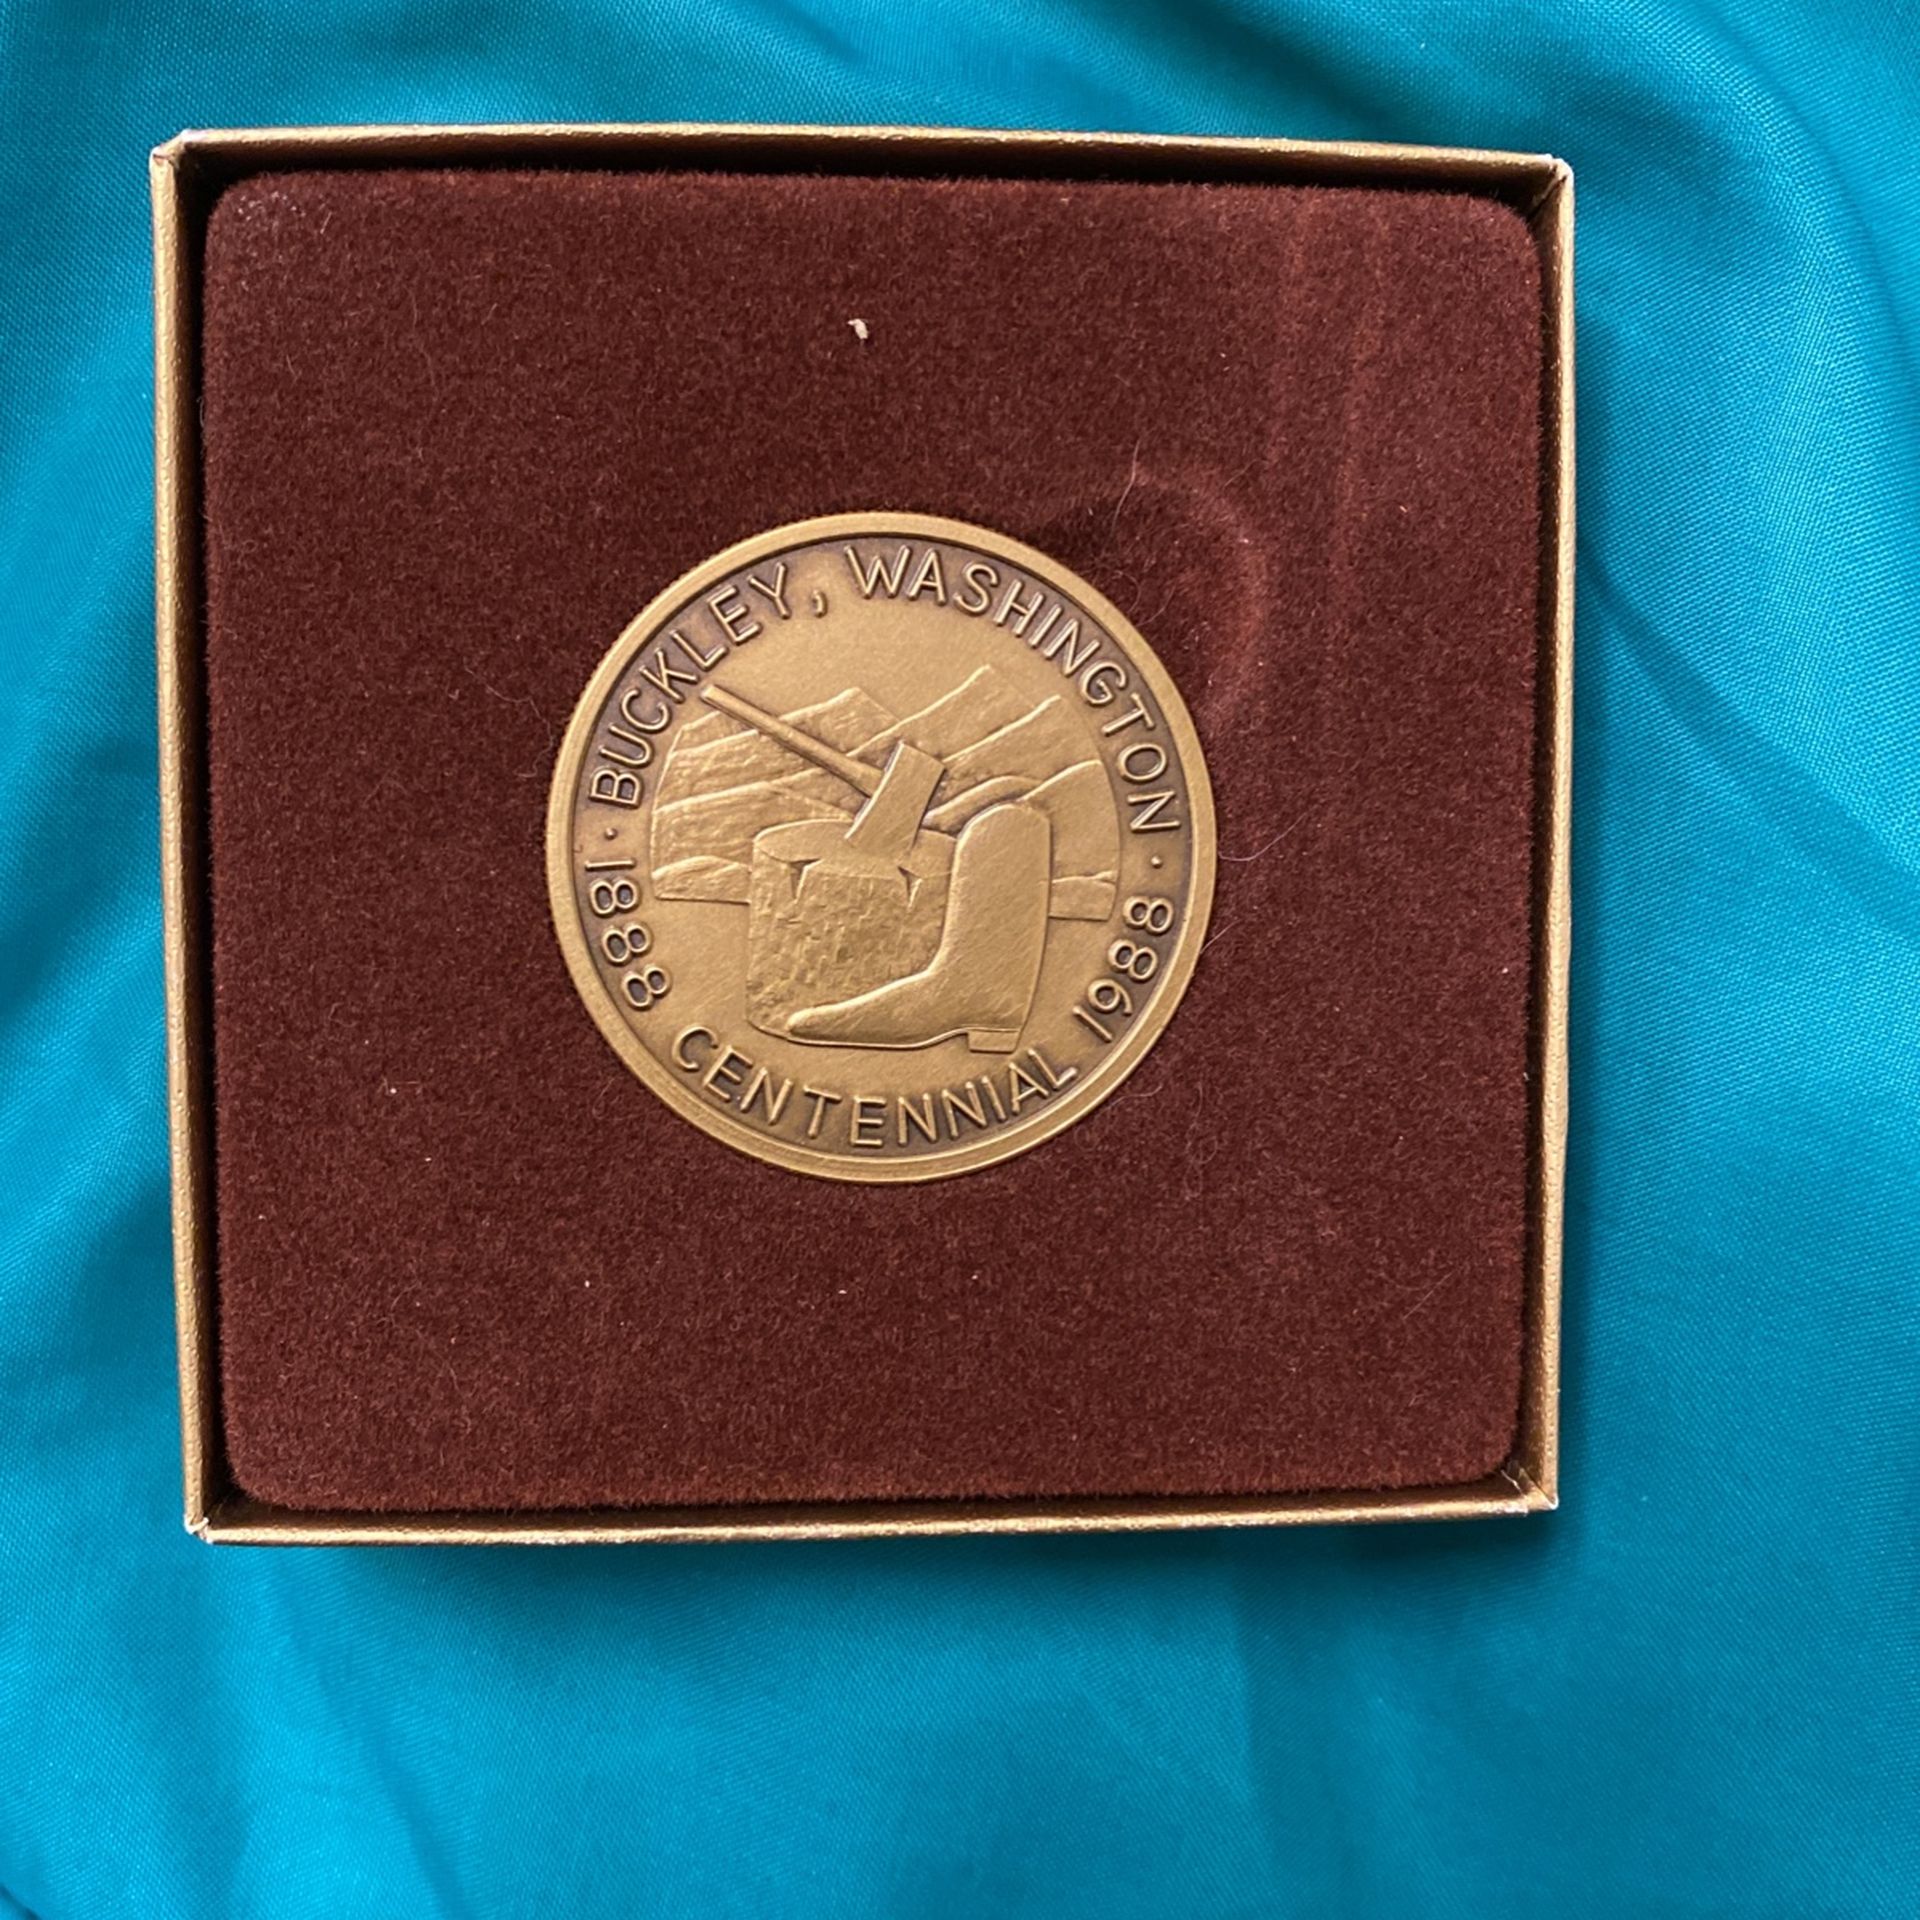 Buckley Washington 100 Year Centennial Challenge Coin 1988